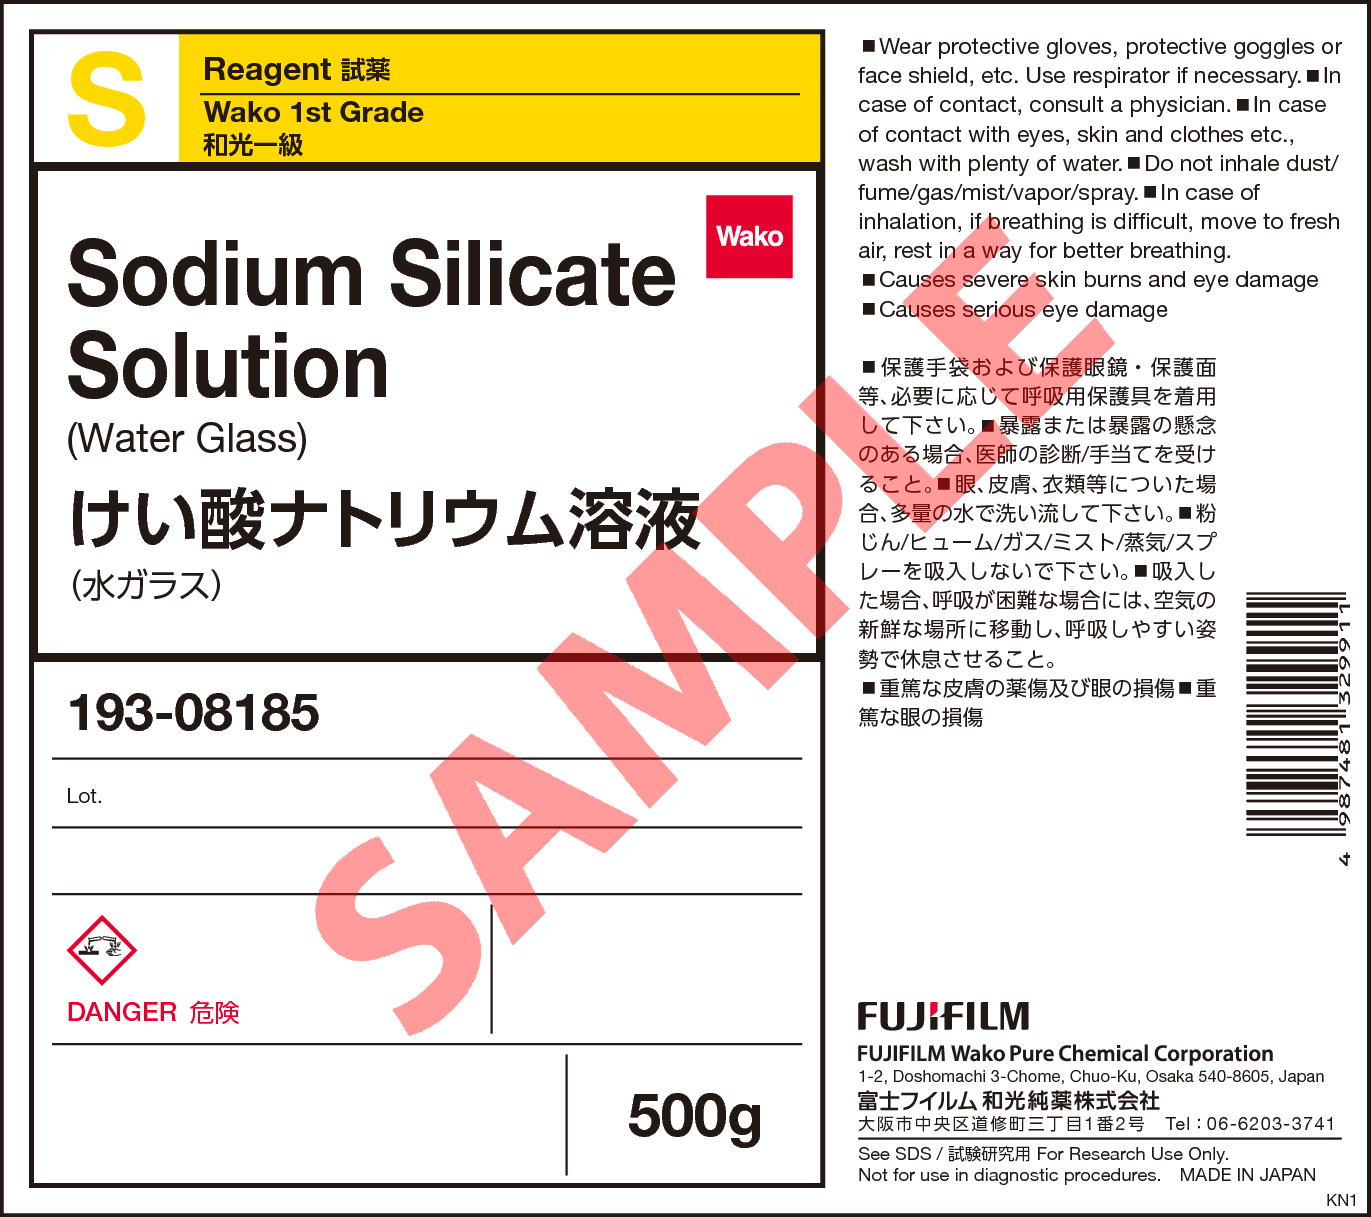 1344 09 8 けい酸ナトリウム溶液 Sodium Silicate Solution 193 08185 詳細情報 試薬 富士フイルム和光純薬